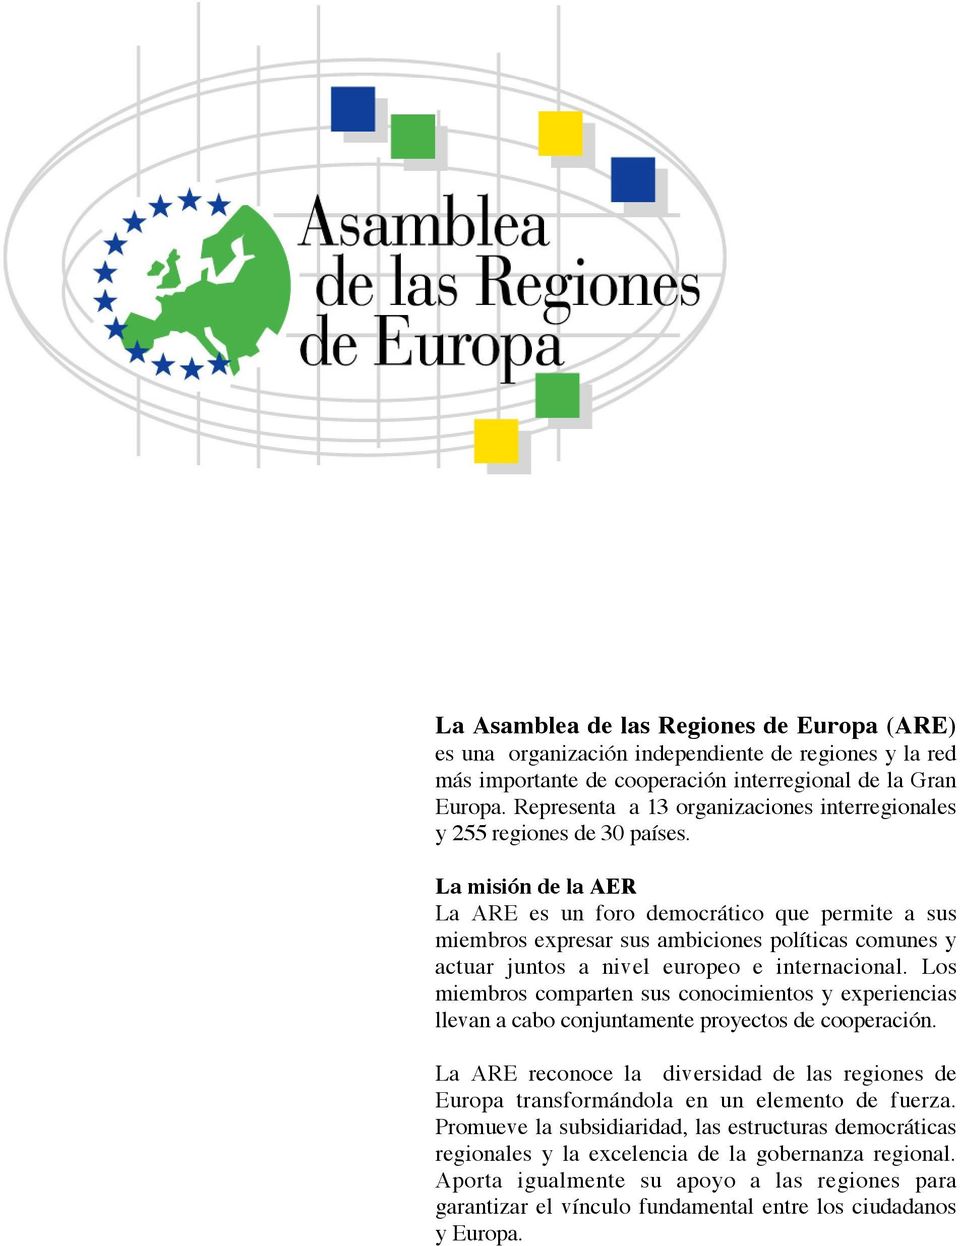 La misión de la AER La ARE es un foro democrático que permite a sus miembros expresar sus ambiciones políticas comunes y actuar juntos a nivel europeo e internacional.